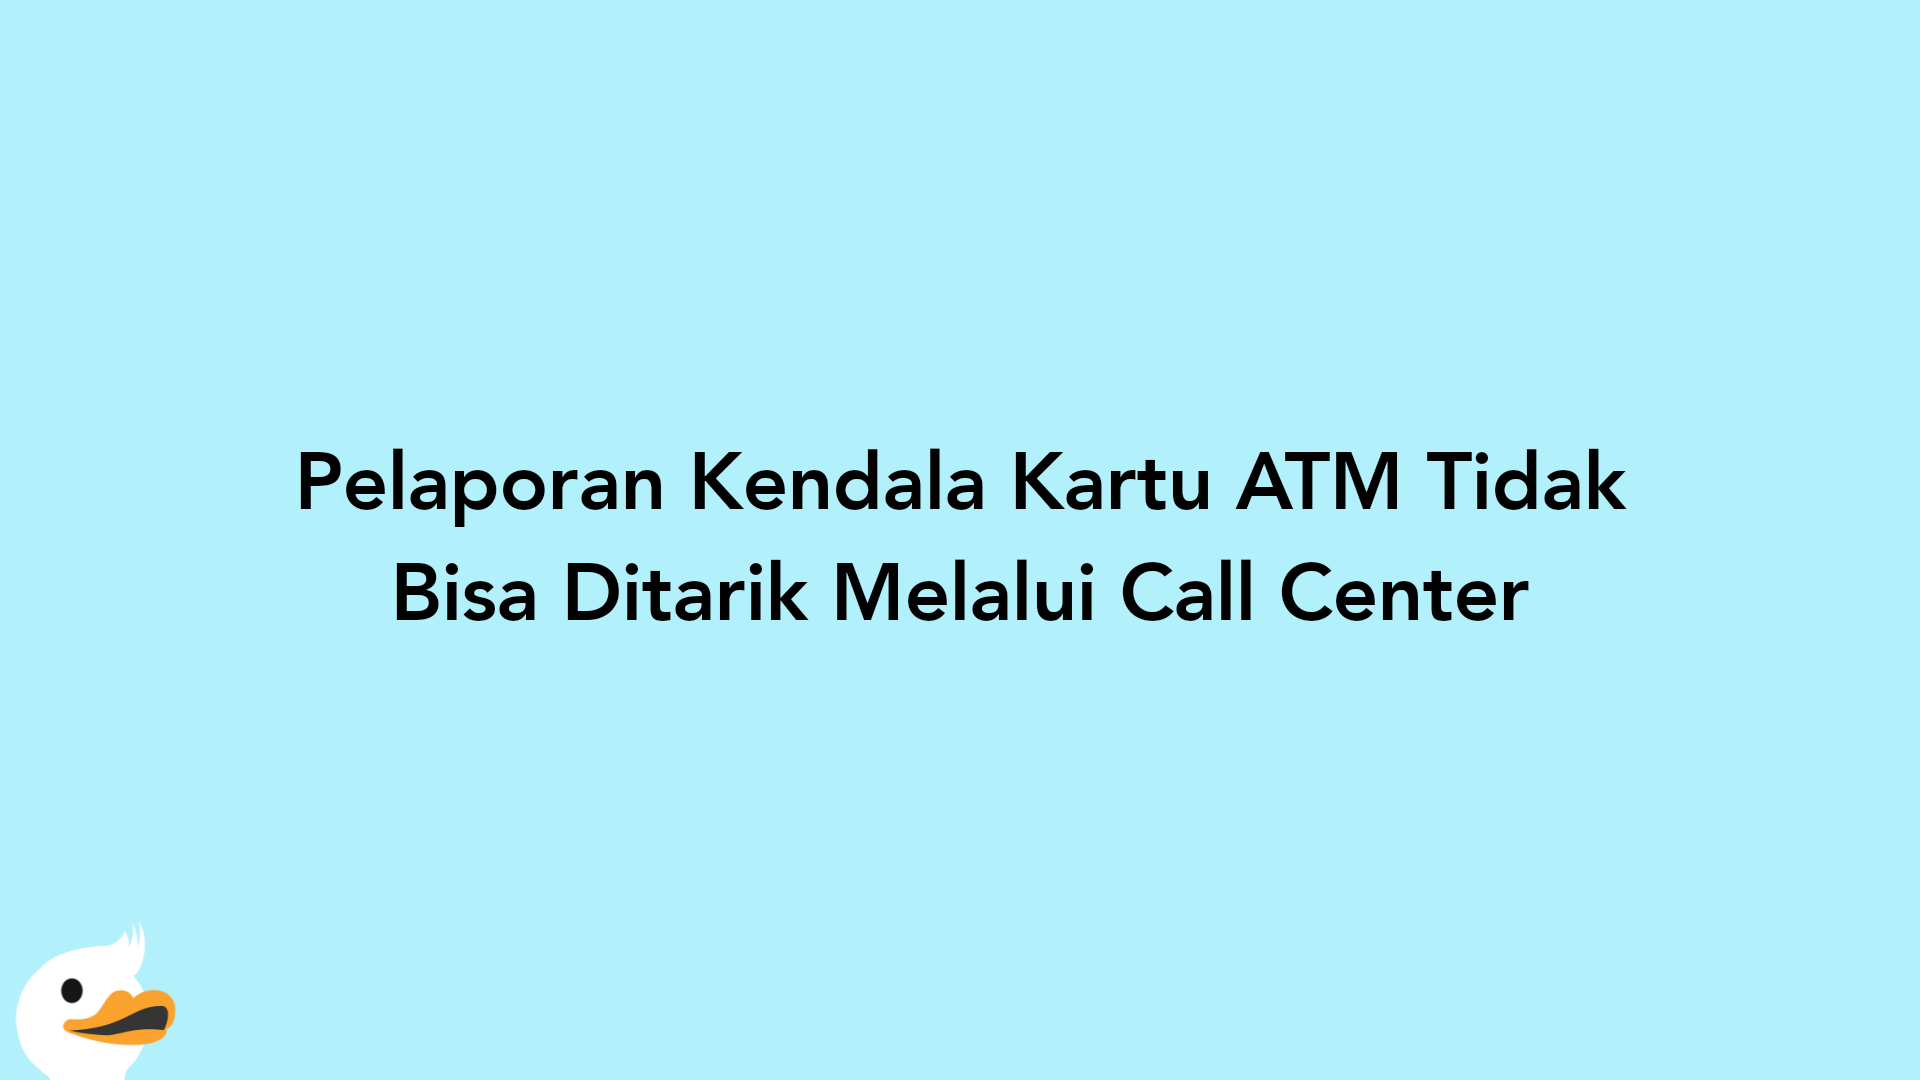 Pelaporan Kendala Kartu ATM Tidak Bisa Ditarik Melalui Call Center